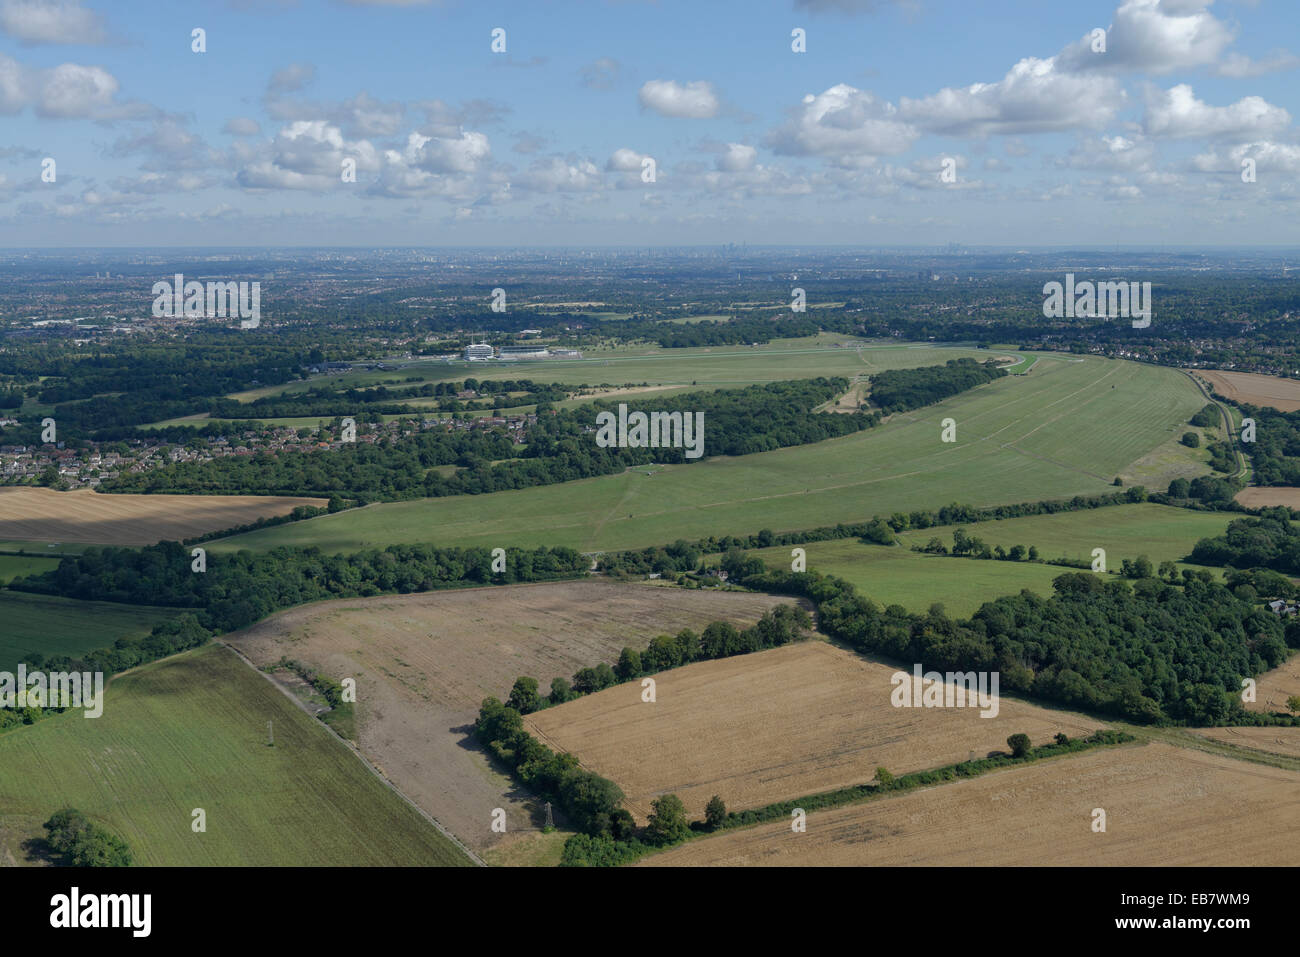 Una veduta aerea di Epsom Downs con l'ippodromo visibile e gli alti edifici di Londra in distanza Foto Stock